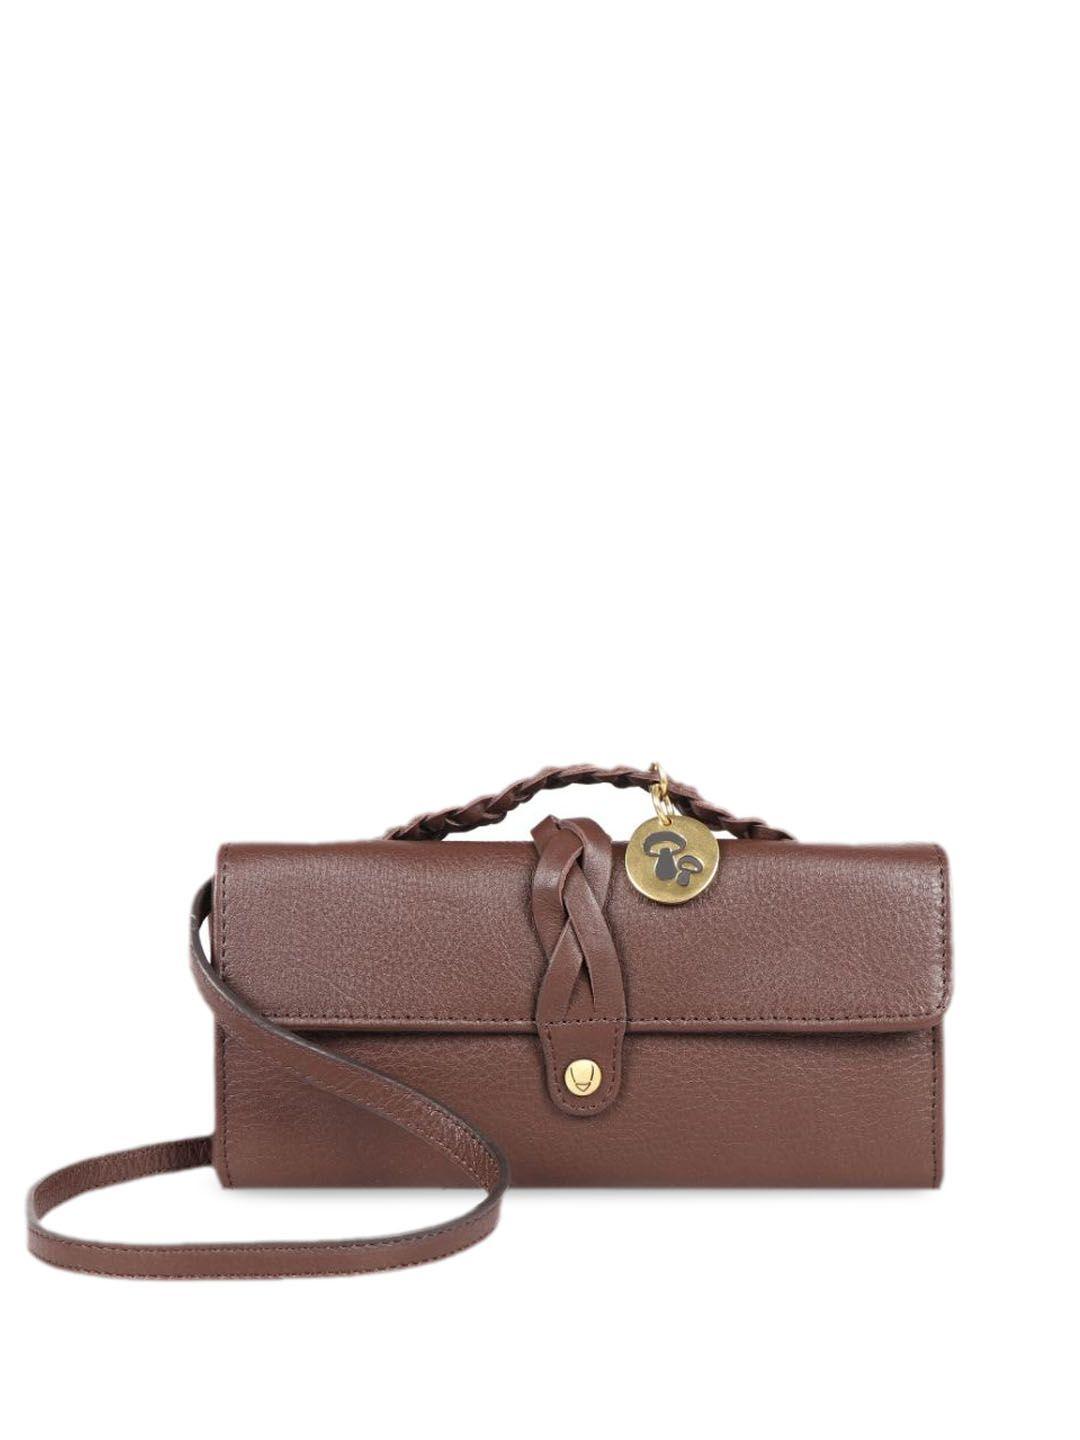 hidesign brown purse clutch